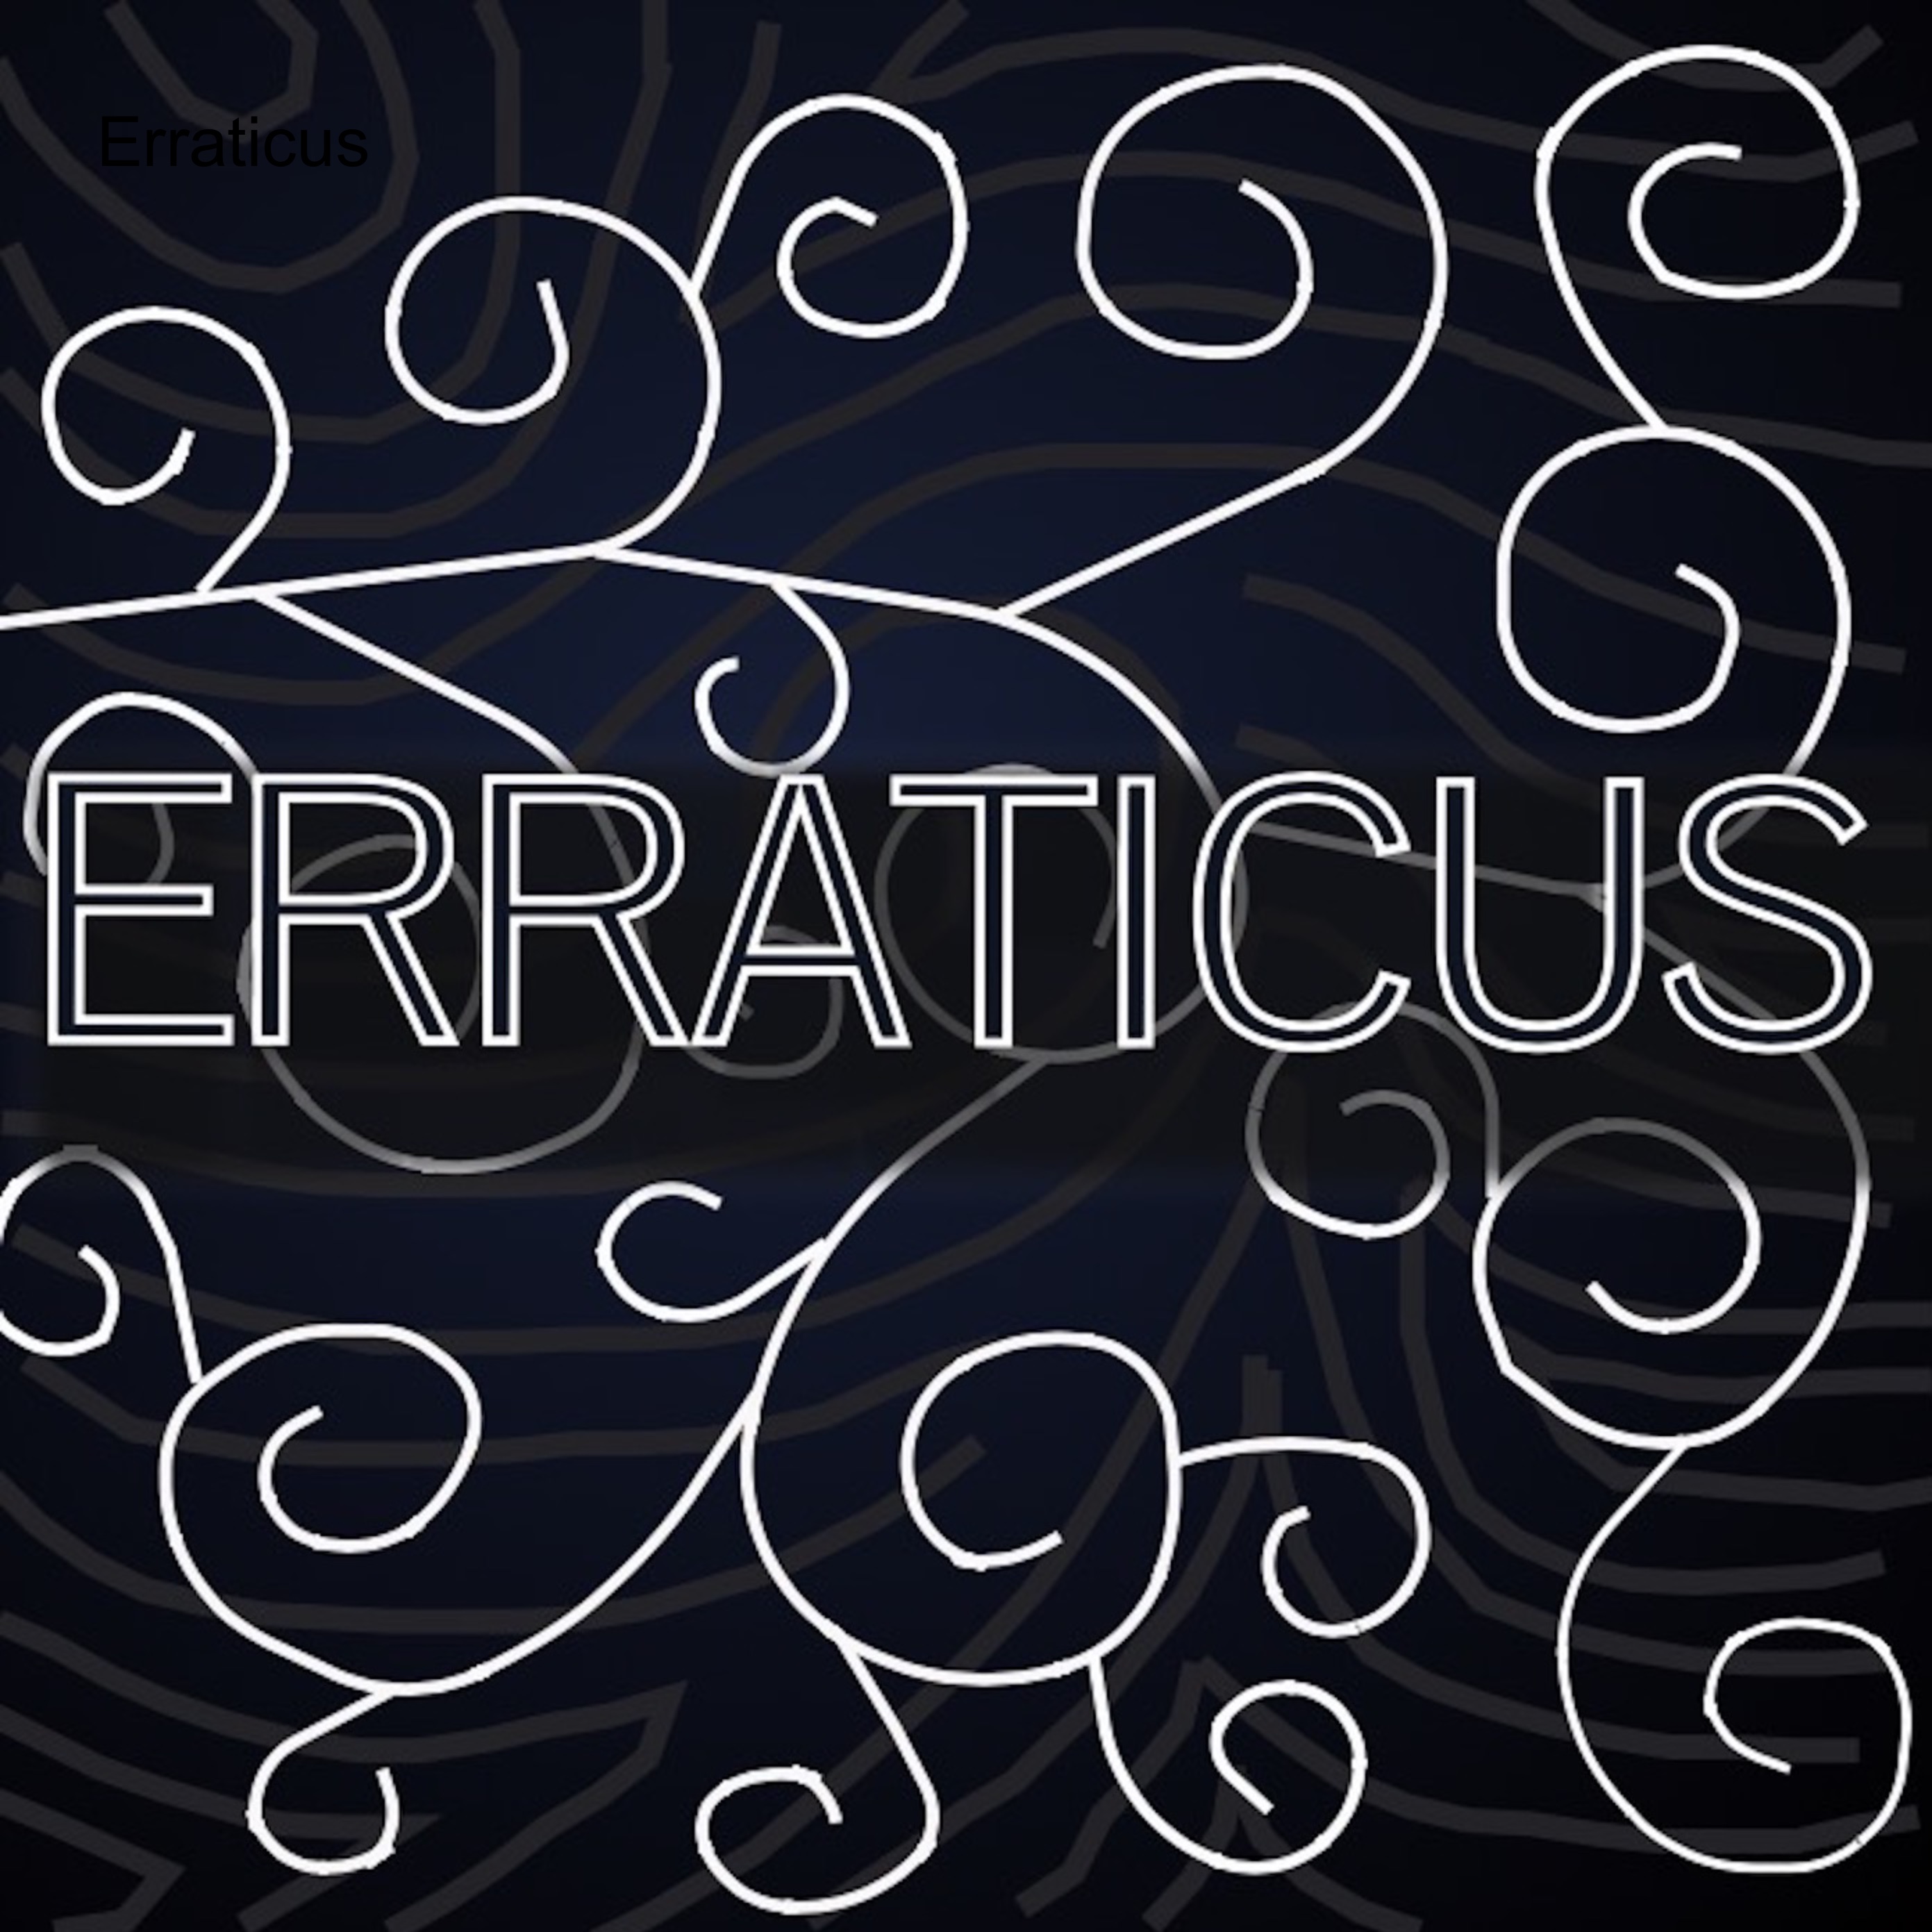 Erraticus